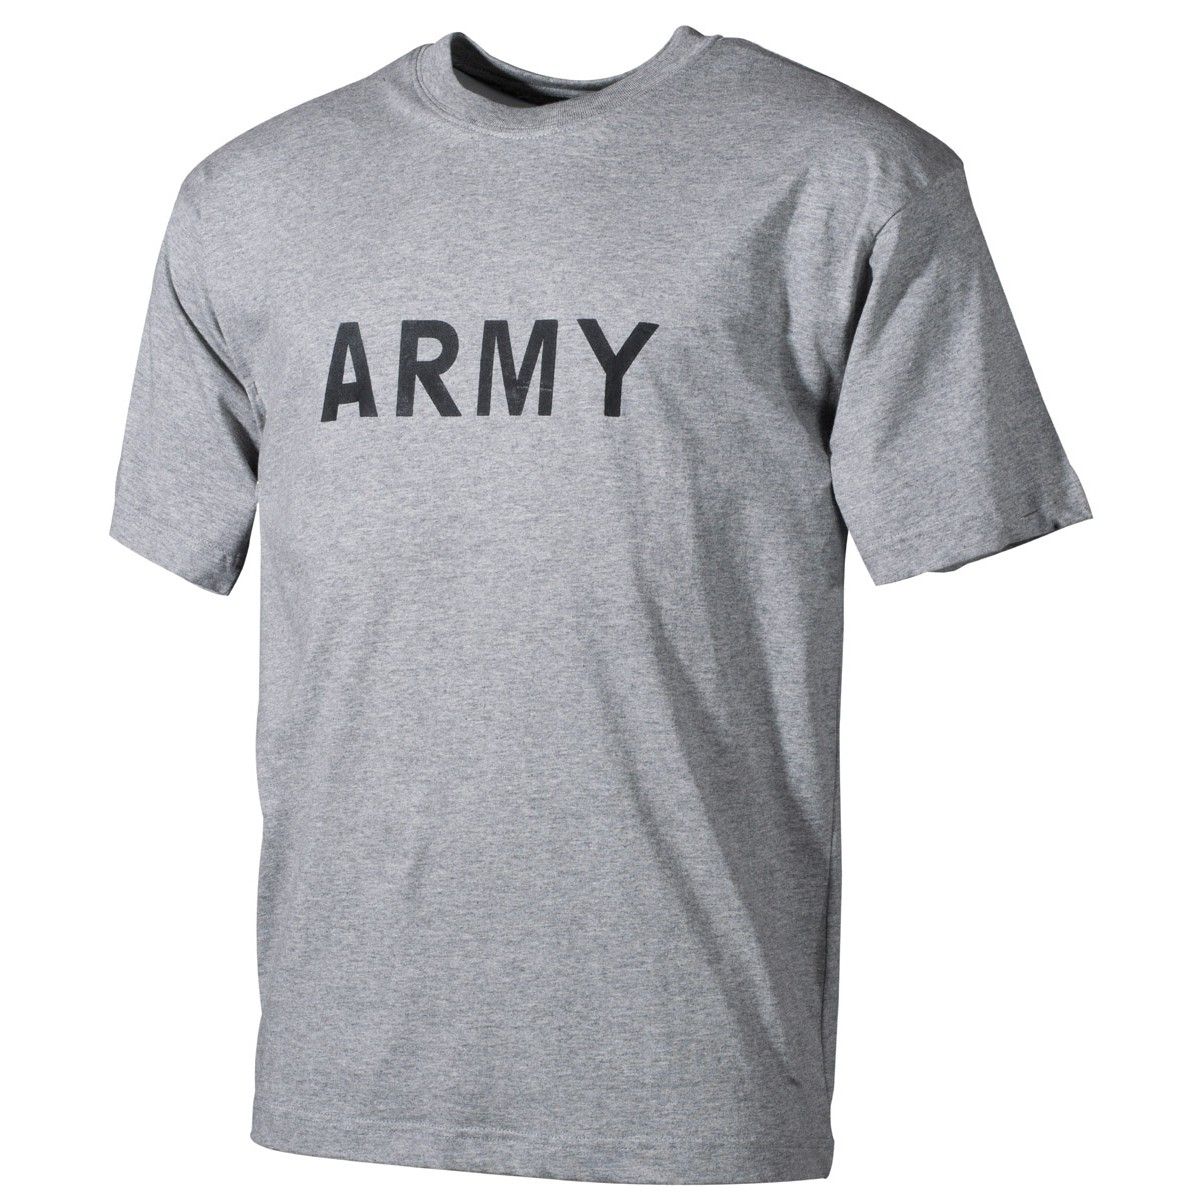 Army póló szürke szinben